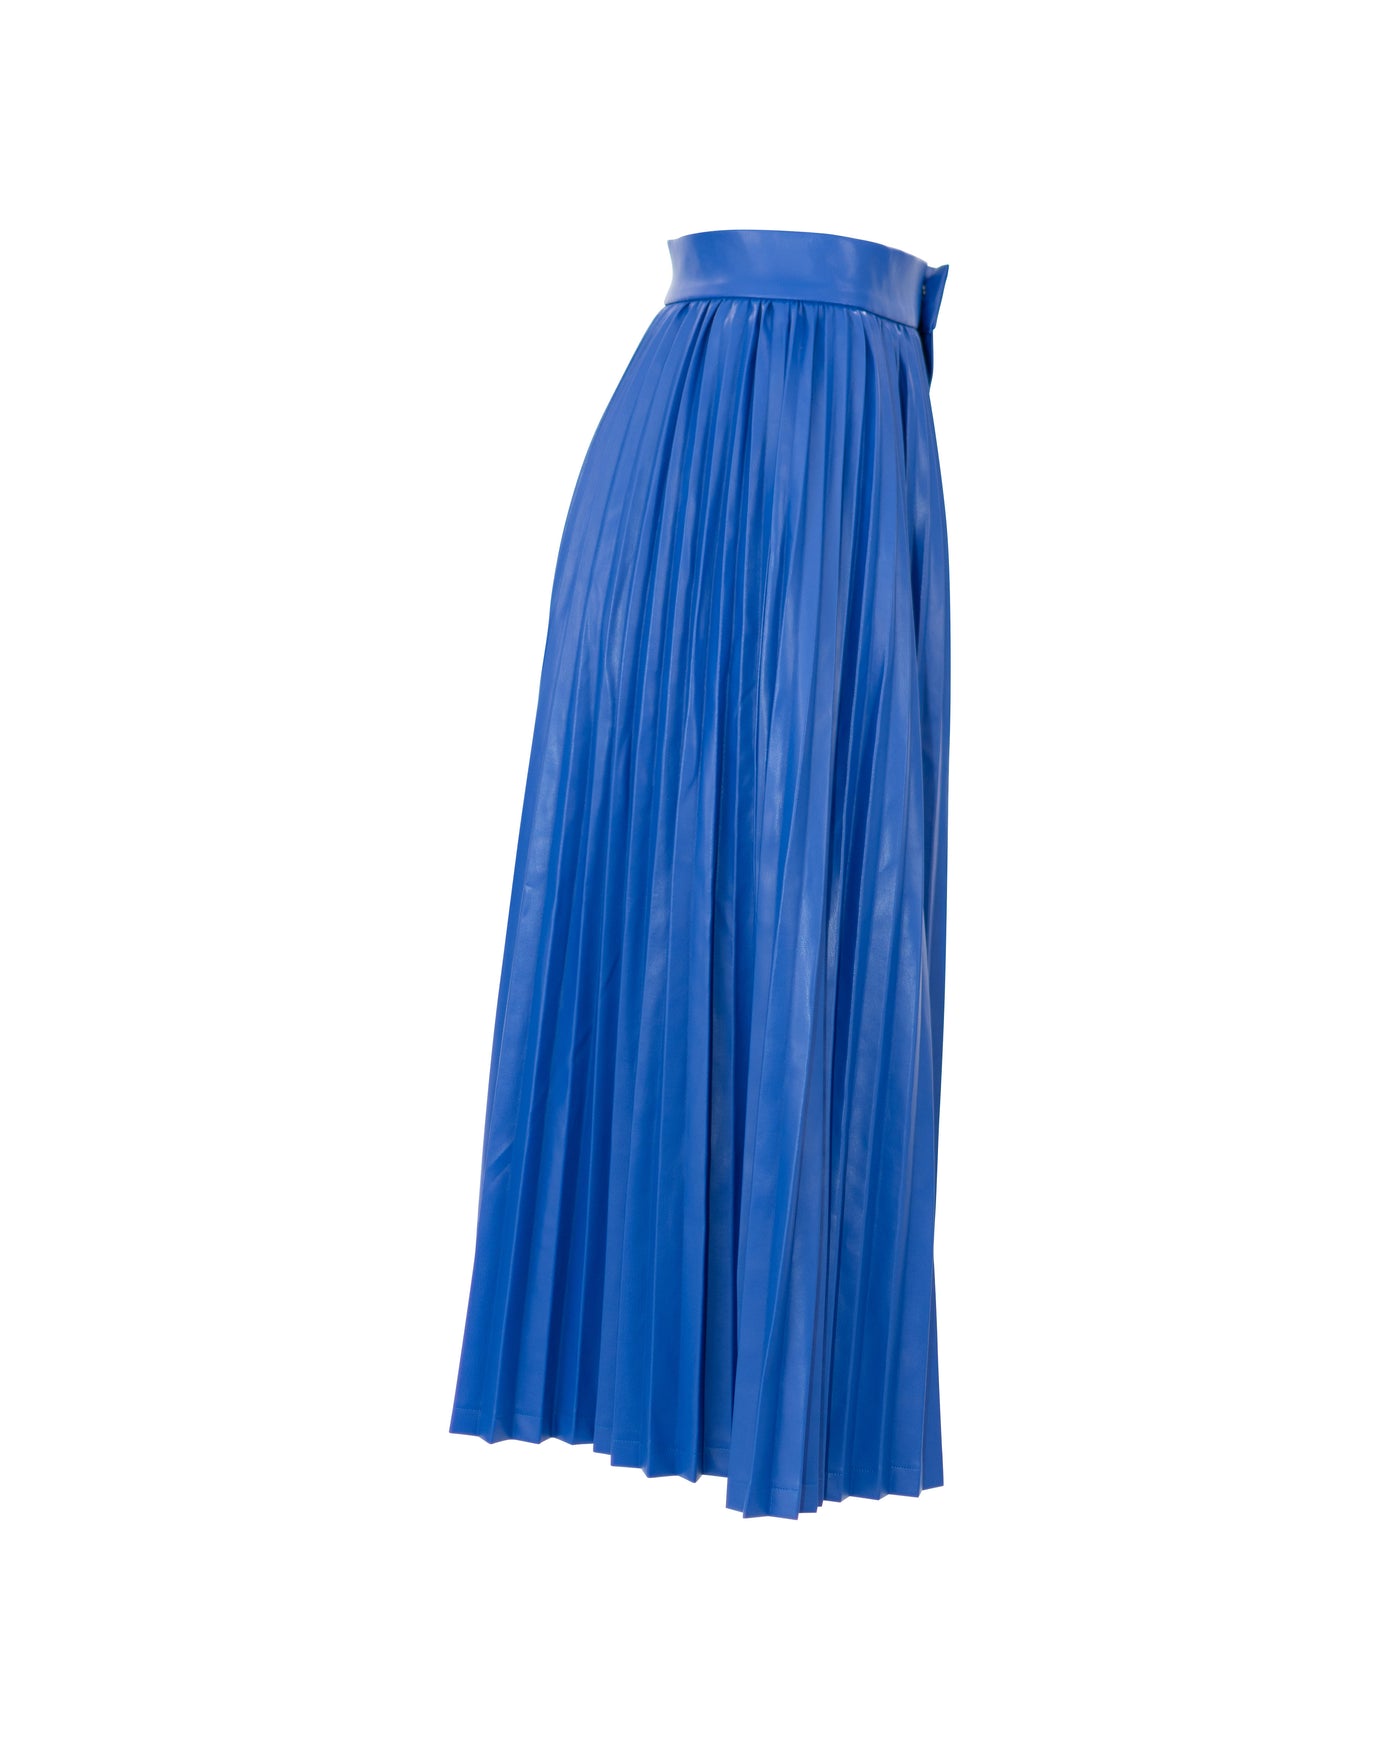 Blue Streak - Skirt